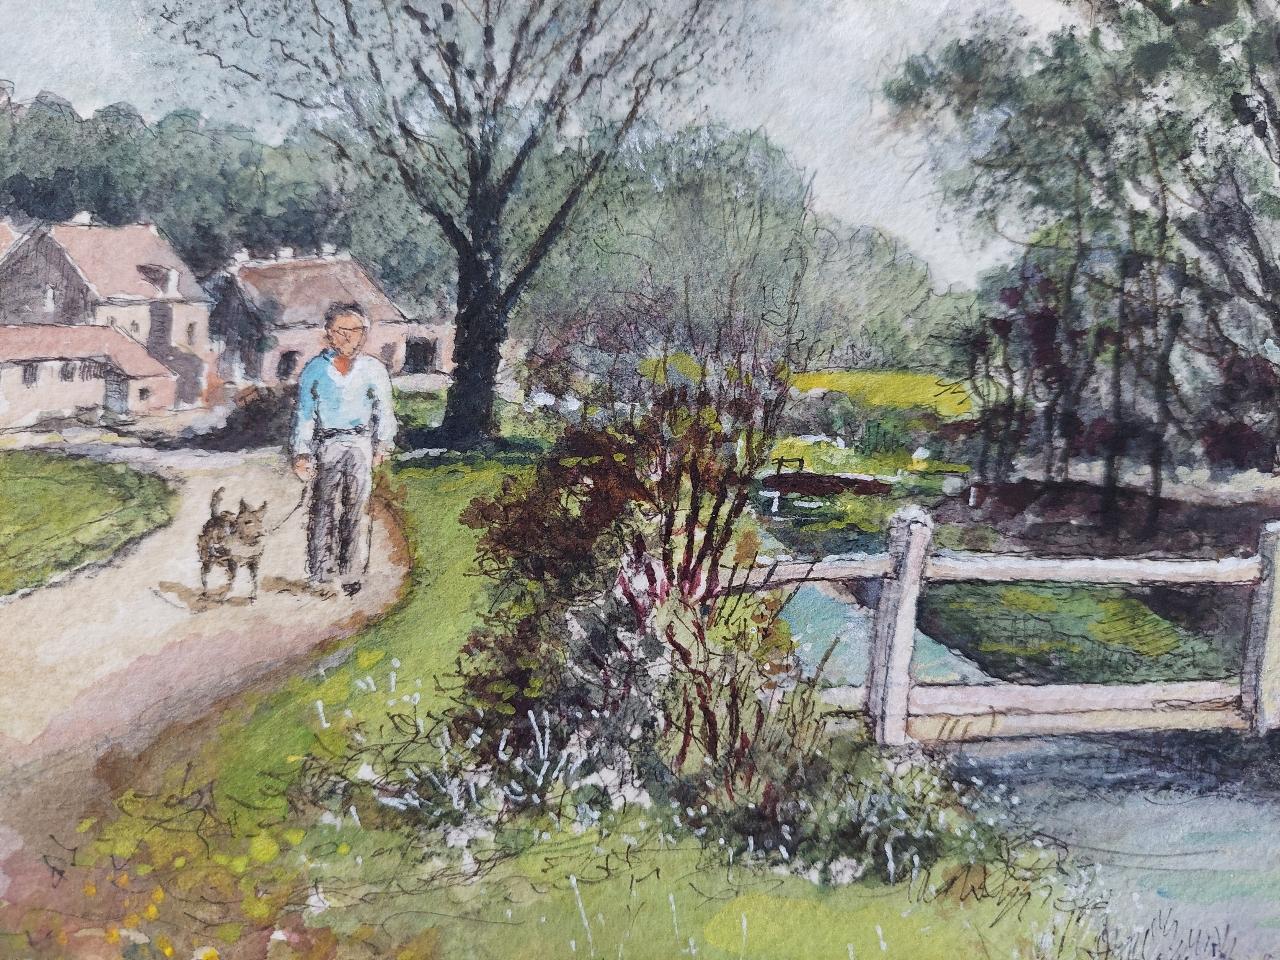 Anglais Peinture traditionnelle anglaise d'une scène de village avec des personnages, un chien et des chevaux en vente